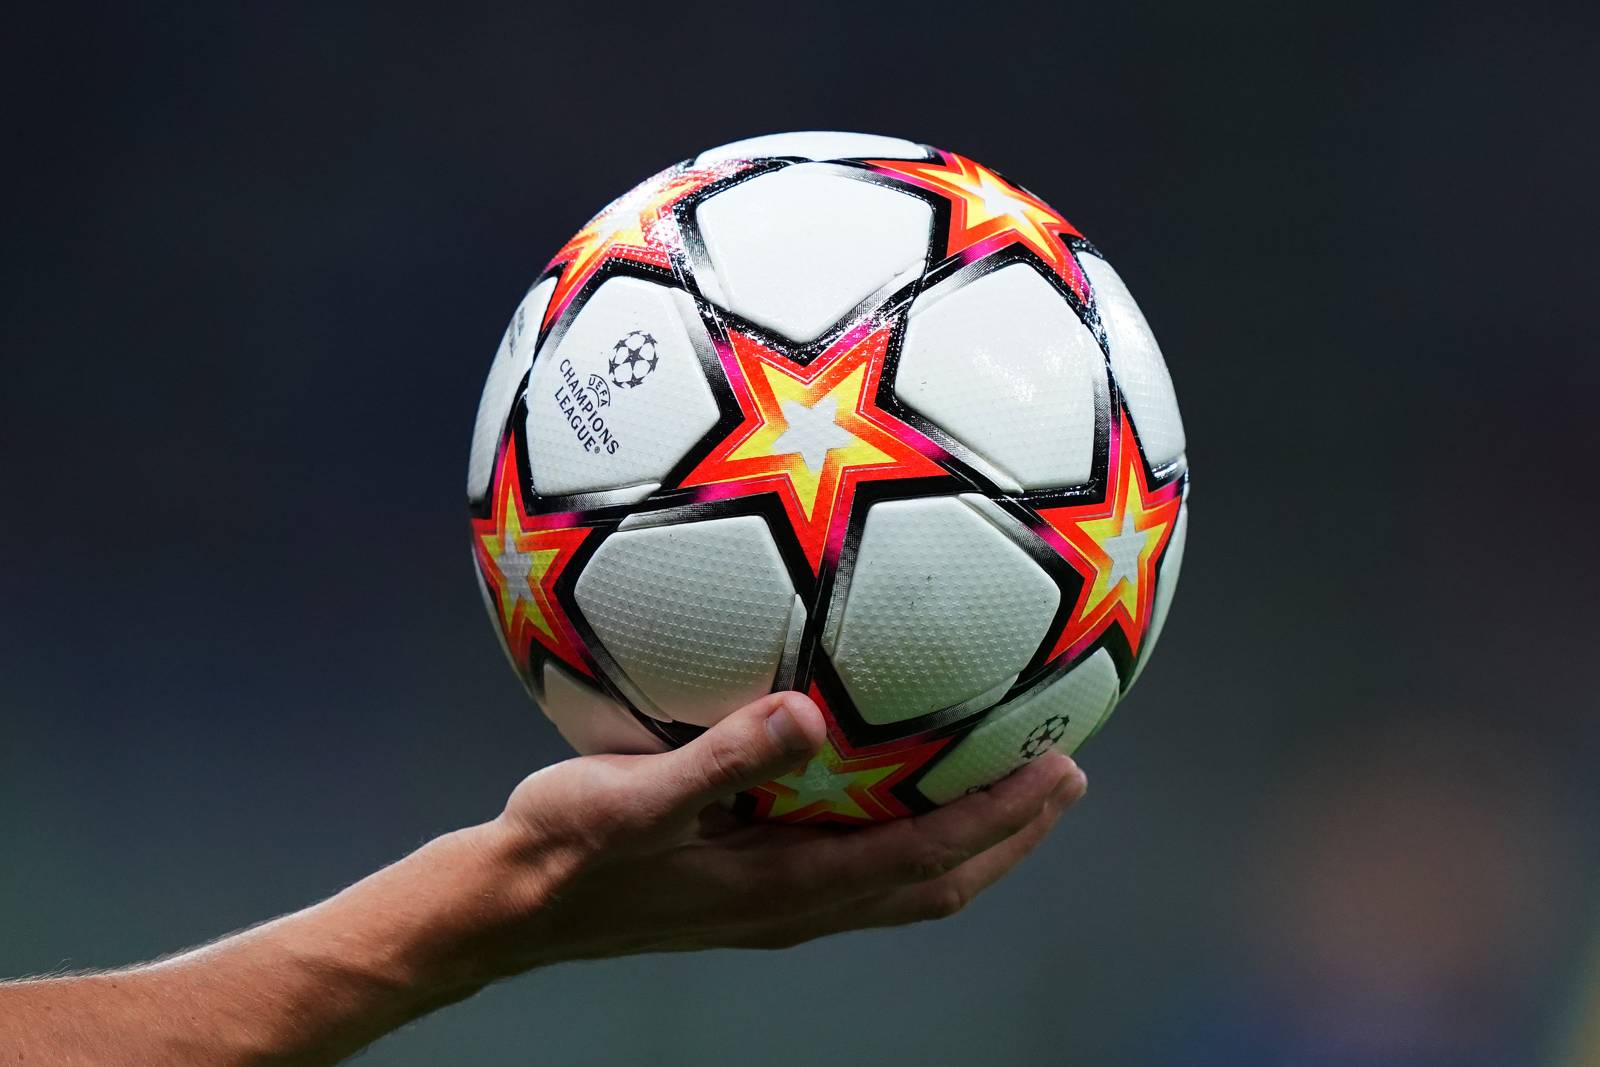 Представлен мяч финала Лиги чемпионов, на который нанесены изображения архитектуры Санкт-Петербурга